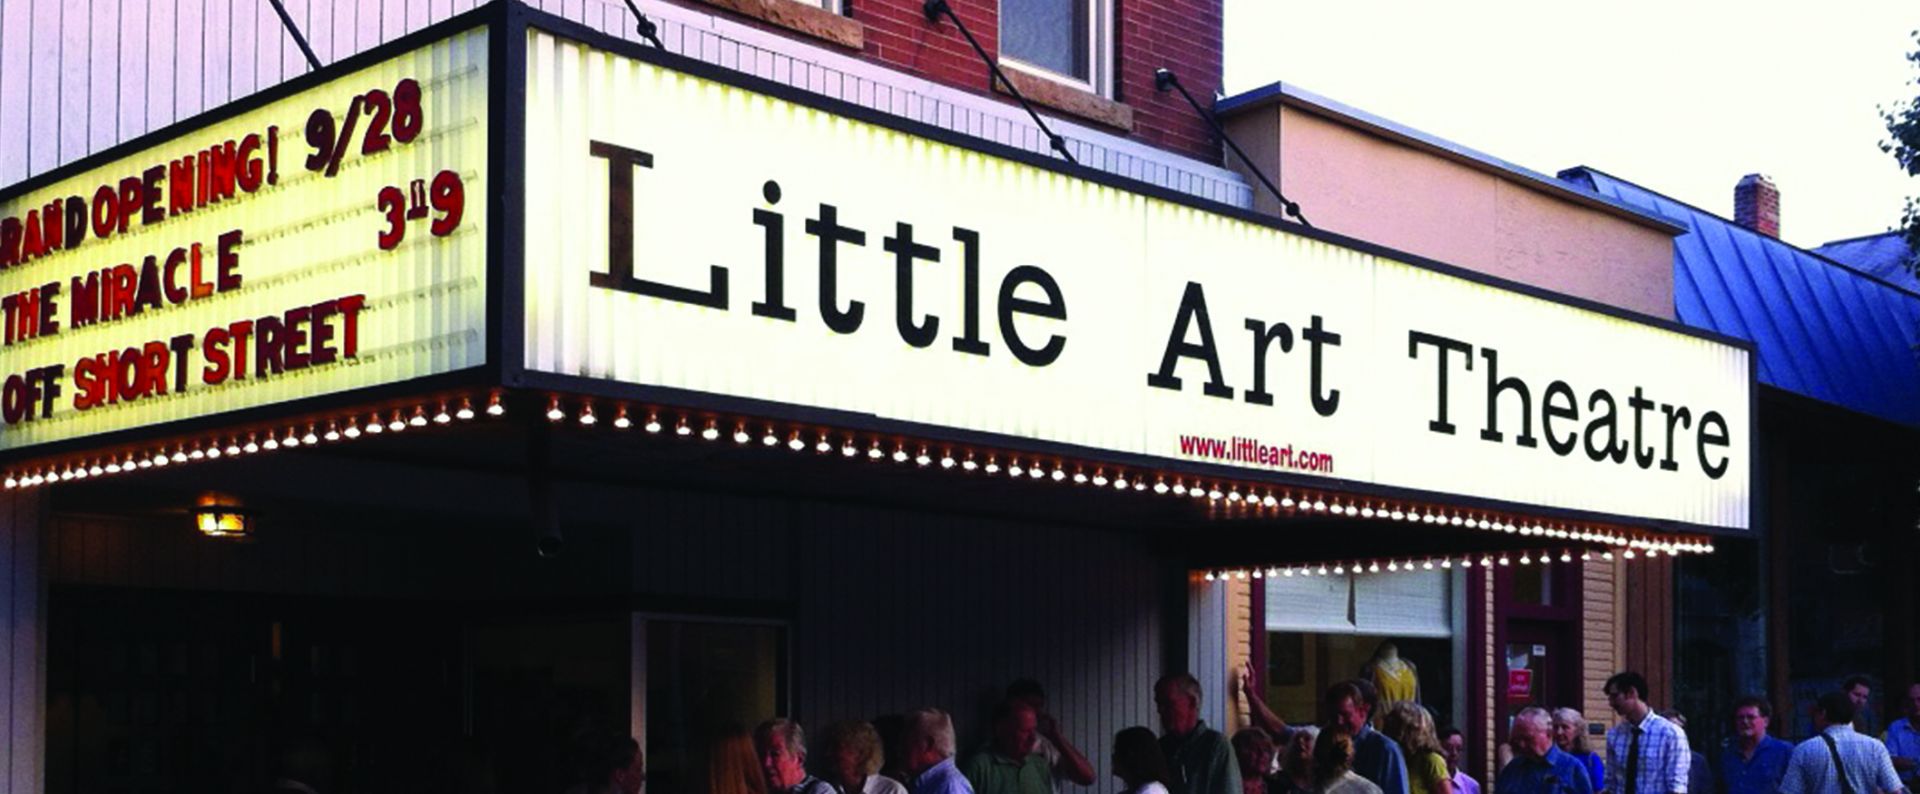 Little Art Theatre Visit Springfield, Ohio